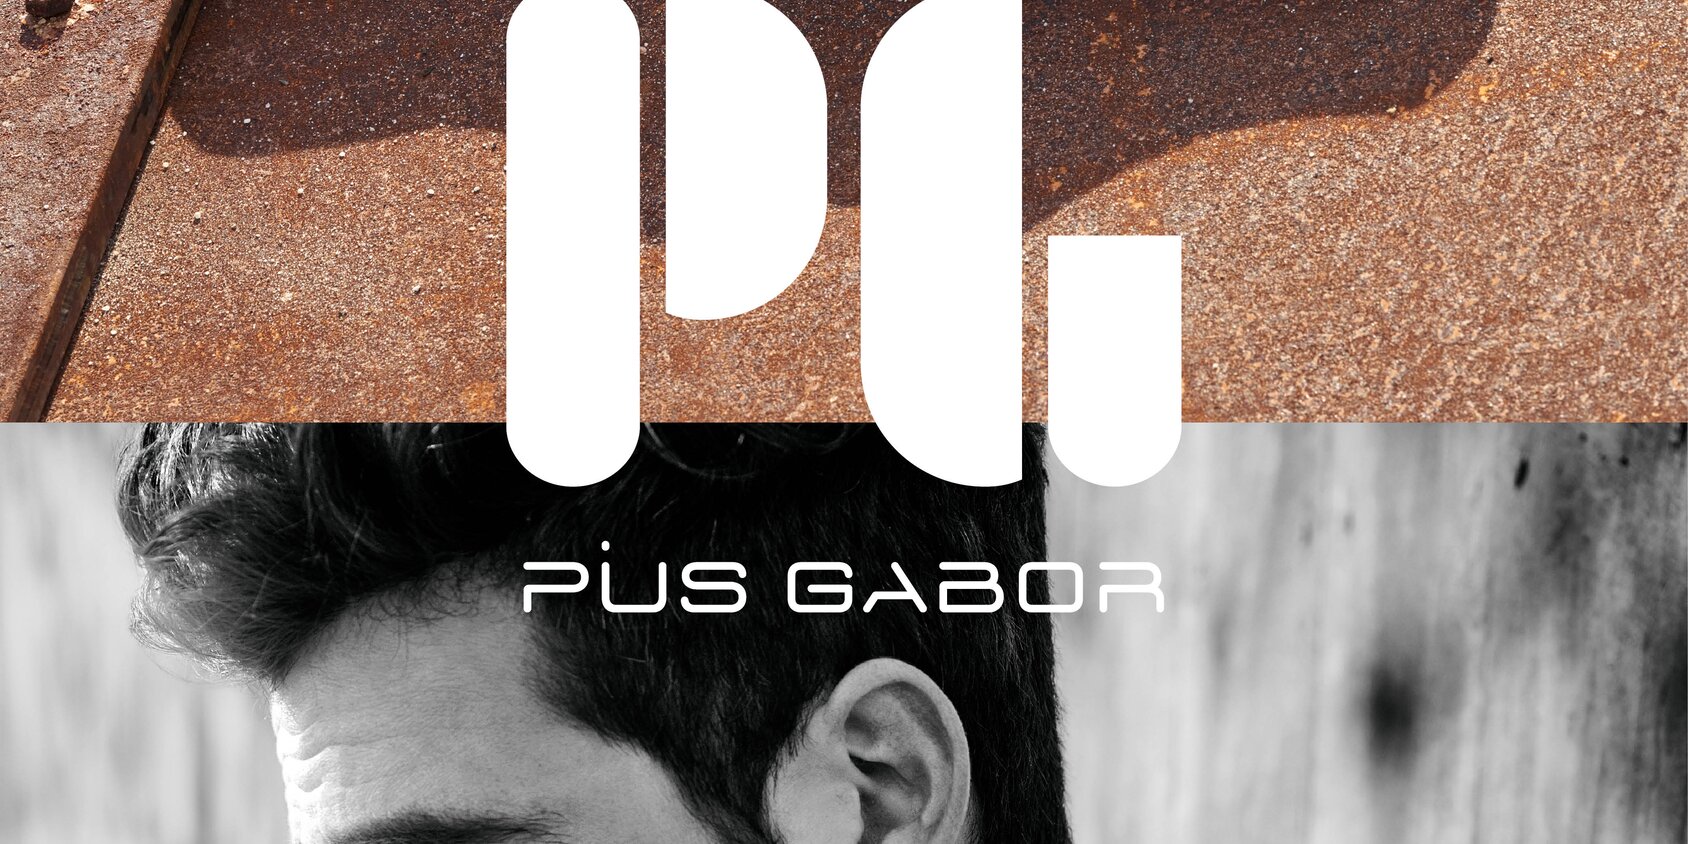 Gabor Schuhe | Die aktuelle Pius Gabor Kollektion | © Gabor Shoes AG, Rosenheim